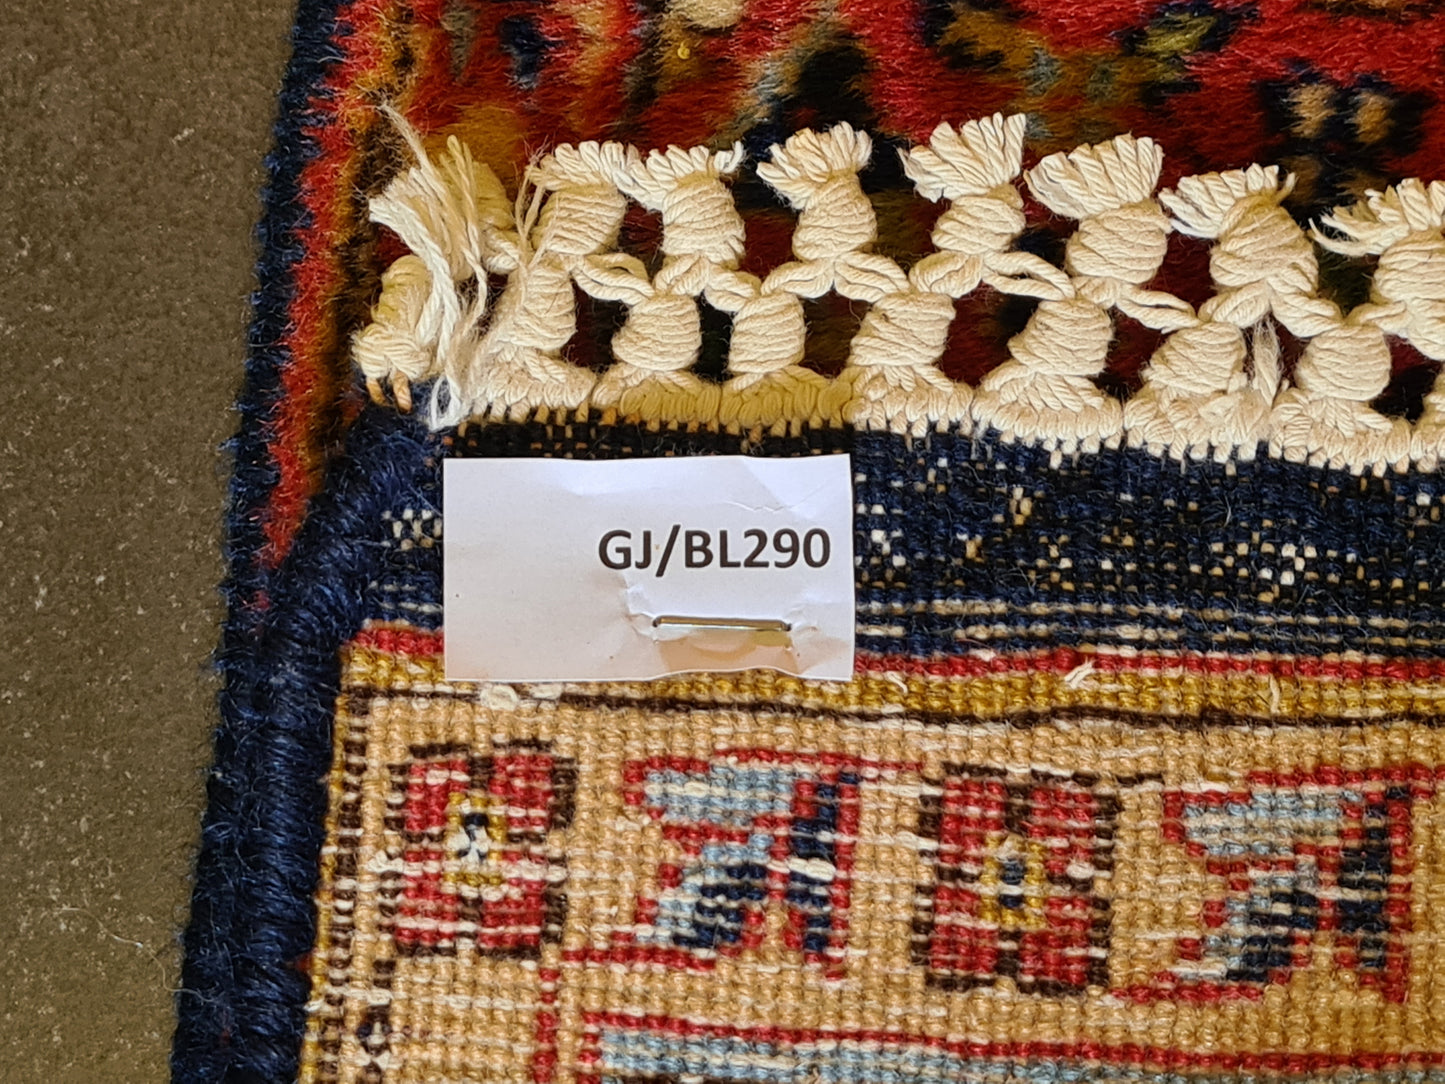 Feiner Handgeknüpfter Kashmir Ghoum Teppich – Ein Sammlerstück 158x93cm